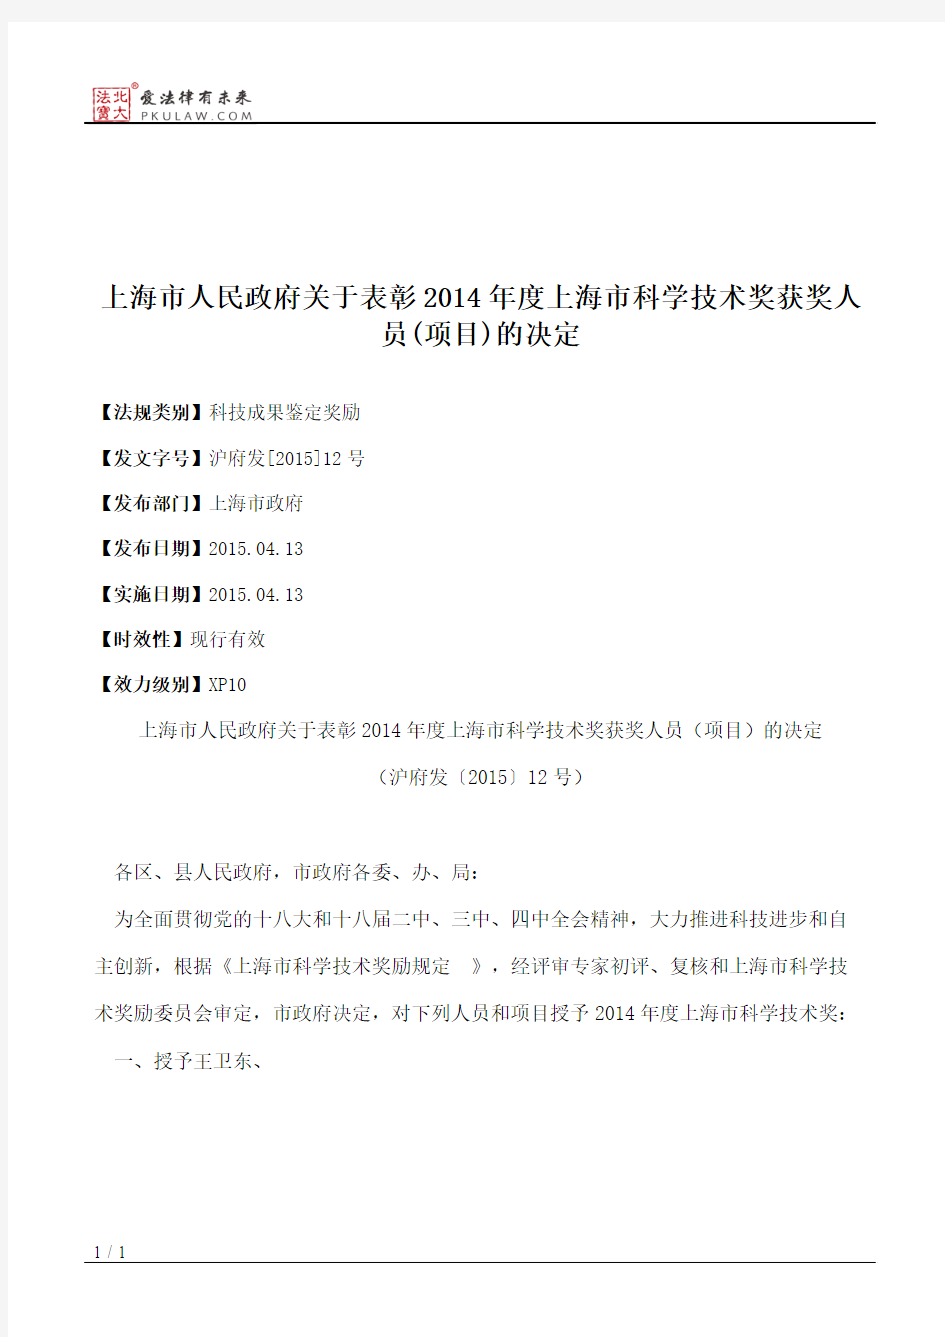 上海市人民政府关于表彰2014年度上海市科学技术奖获奖人员(项目)的决定